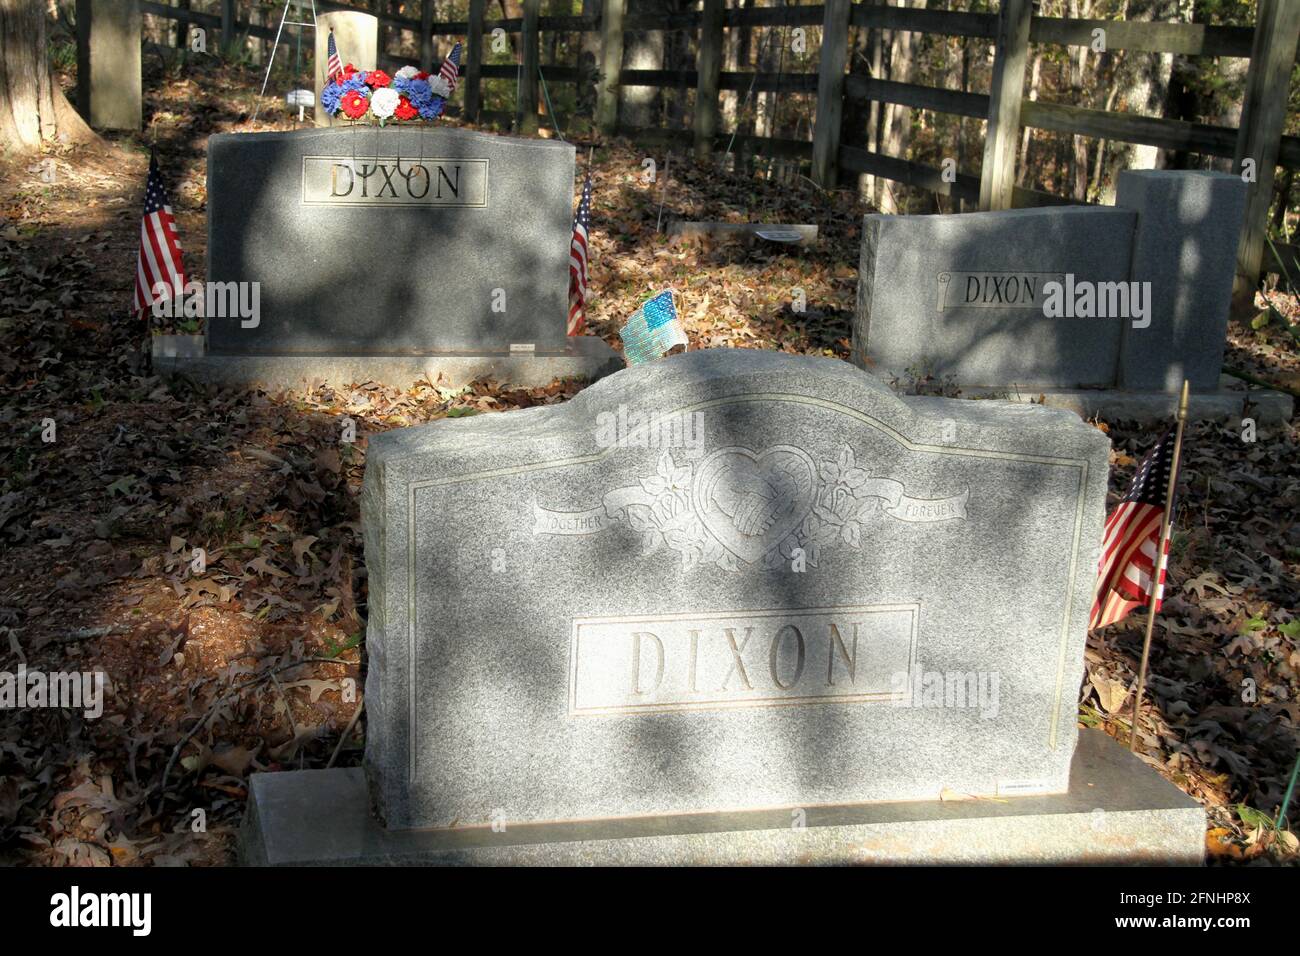 Dixon Family Cemetery in Gladstone, VA, USA Stock Photo